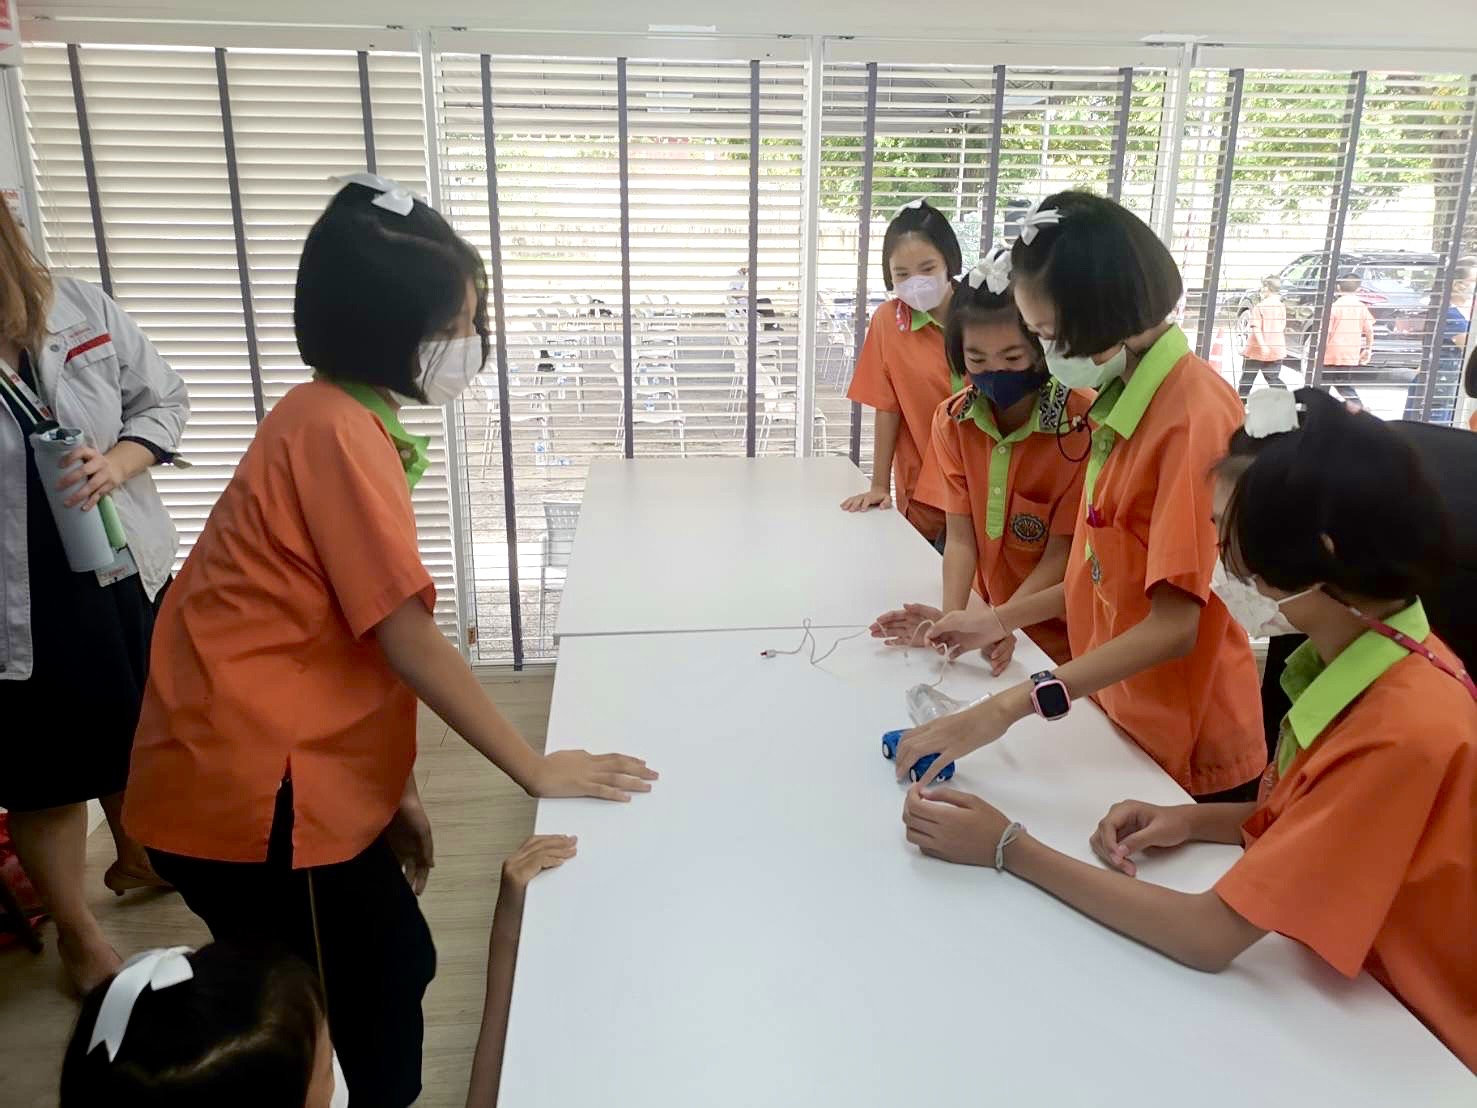 บริษัท นิสสันมอเตอร์ (ประเทศไทย) จำกัด ร่วมกับมูลนิธิรักษ์ไทย จัดอบรมมอบความรู้ด้านรถยนต์ไฟฟ้าที่ช่วยลดมลภาวะทางสิ่งแวดล้อม ให้กับนักเรียนและคุณครูจากโรงเรียนวัดจระเข้ใหญ่และโรงเรียนวัดพรหมพิกุลทอง จ.สมุทรปราการ